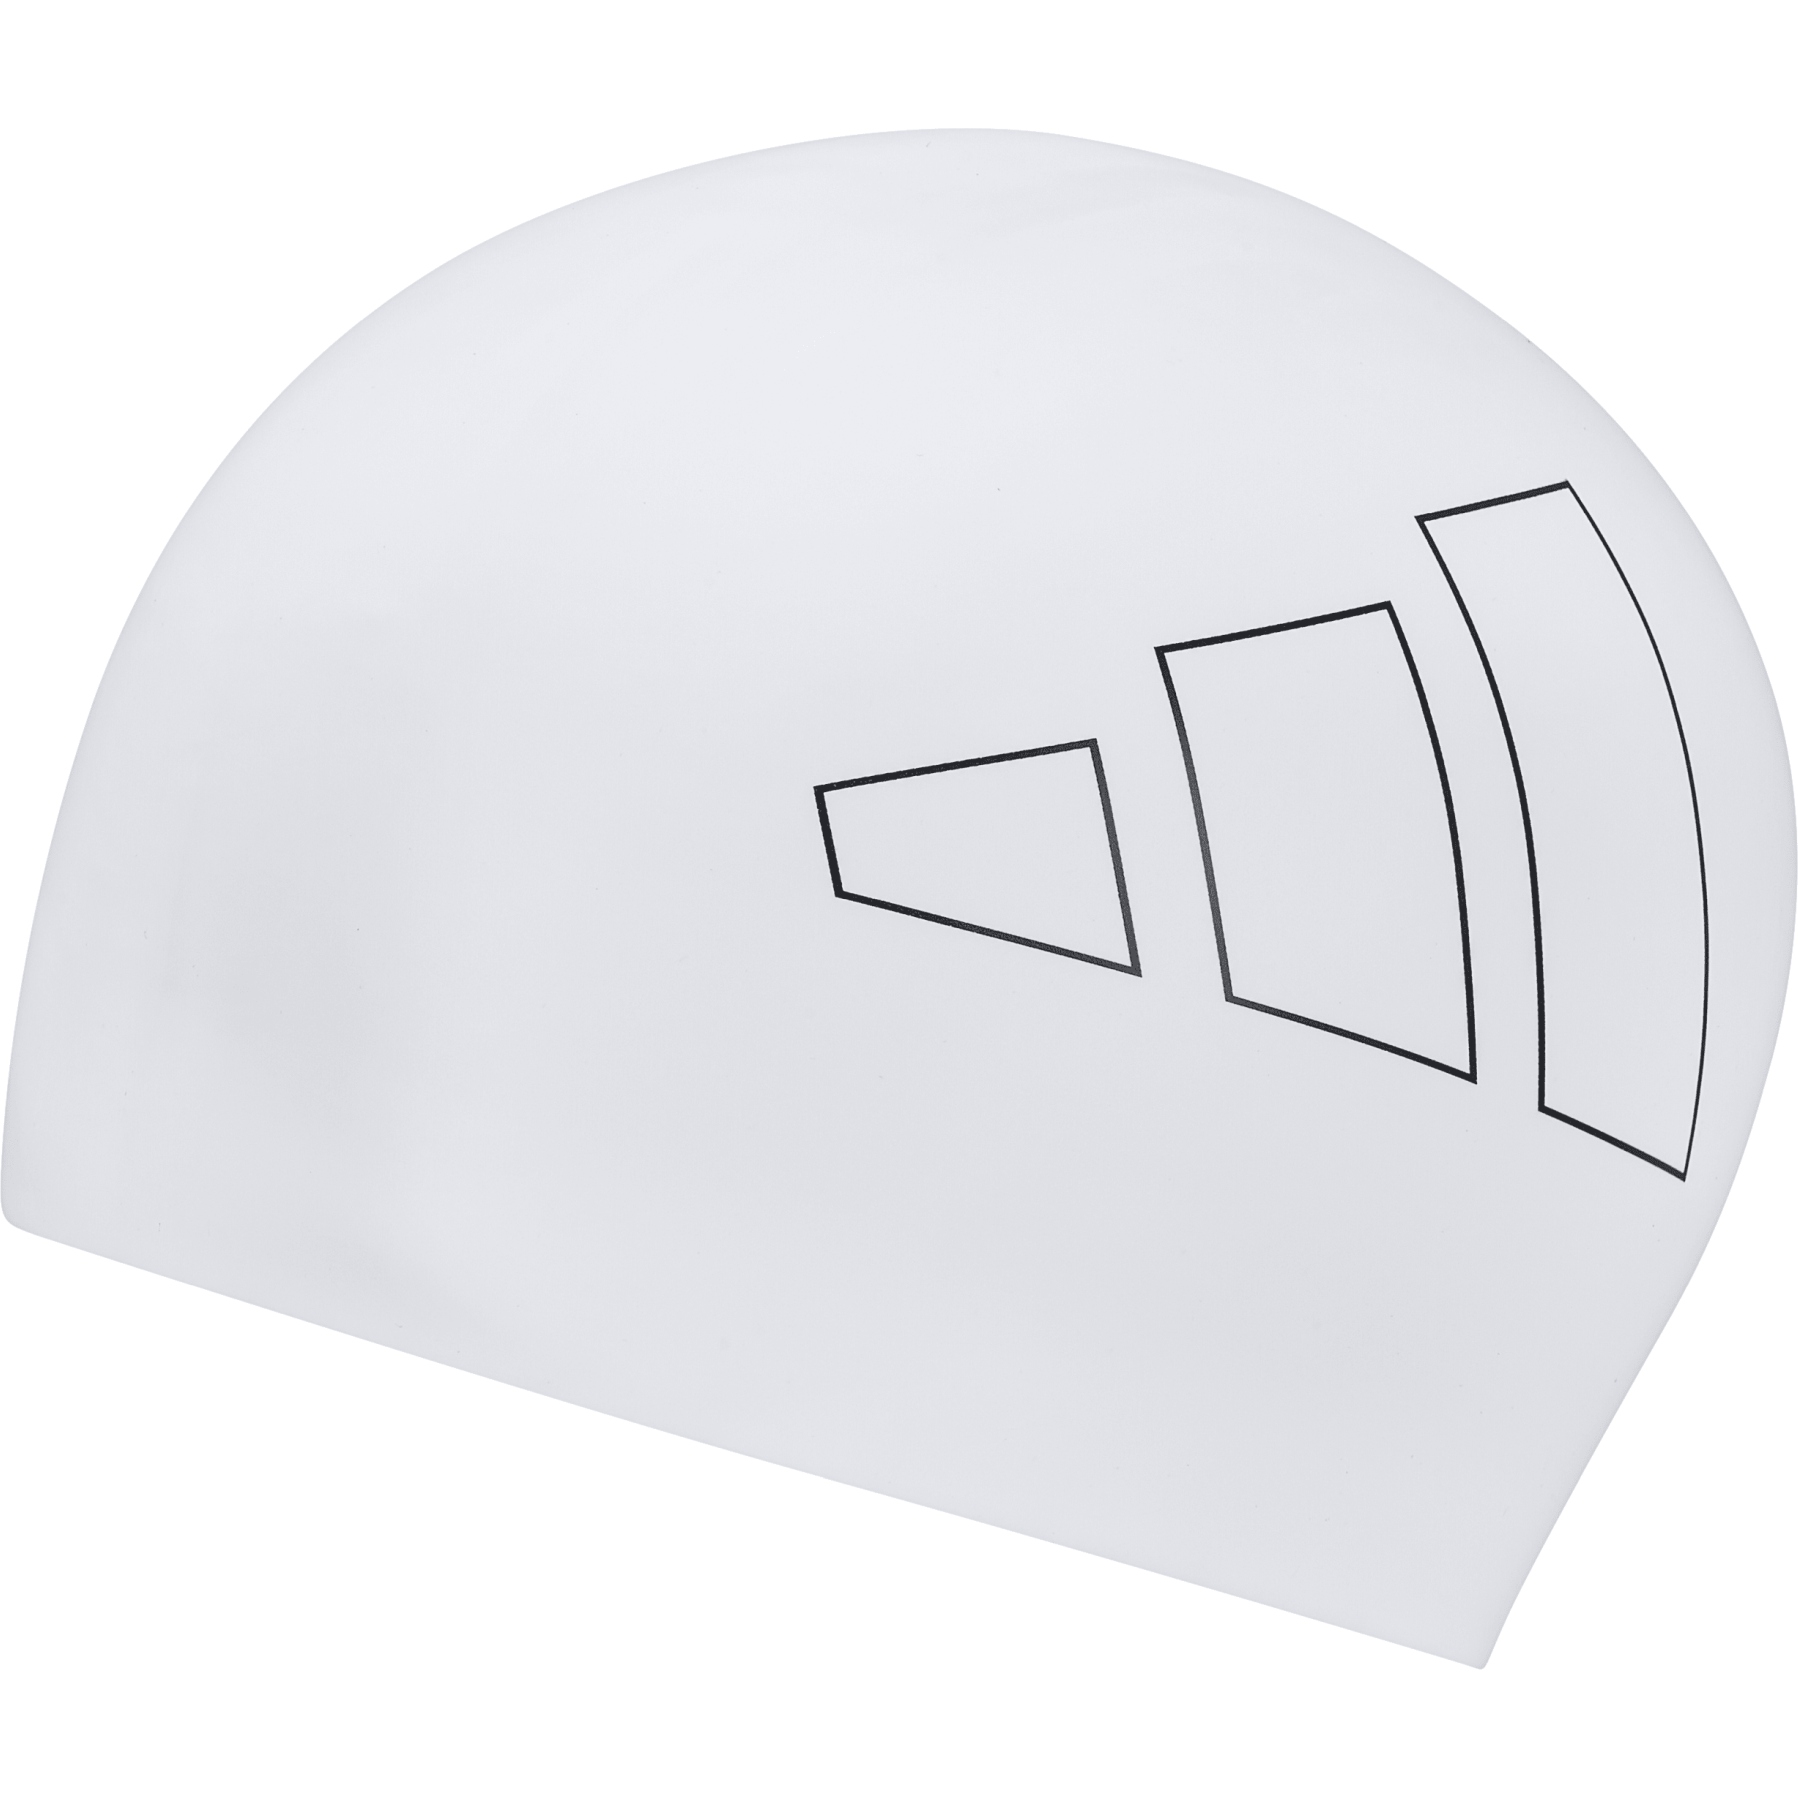 Produktbild von adidas Adult Logo Badekappe - weiß/schwarz IU1900